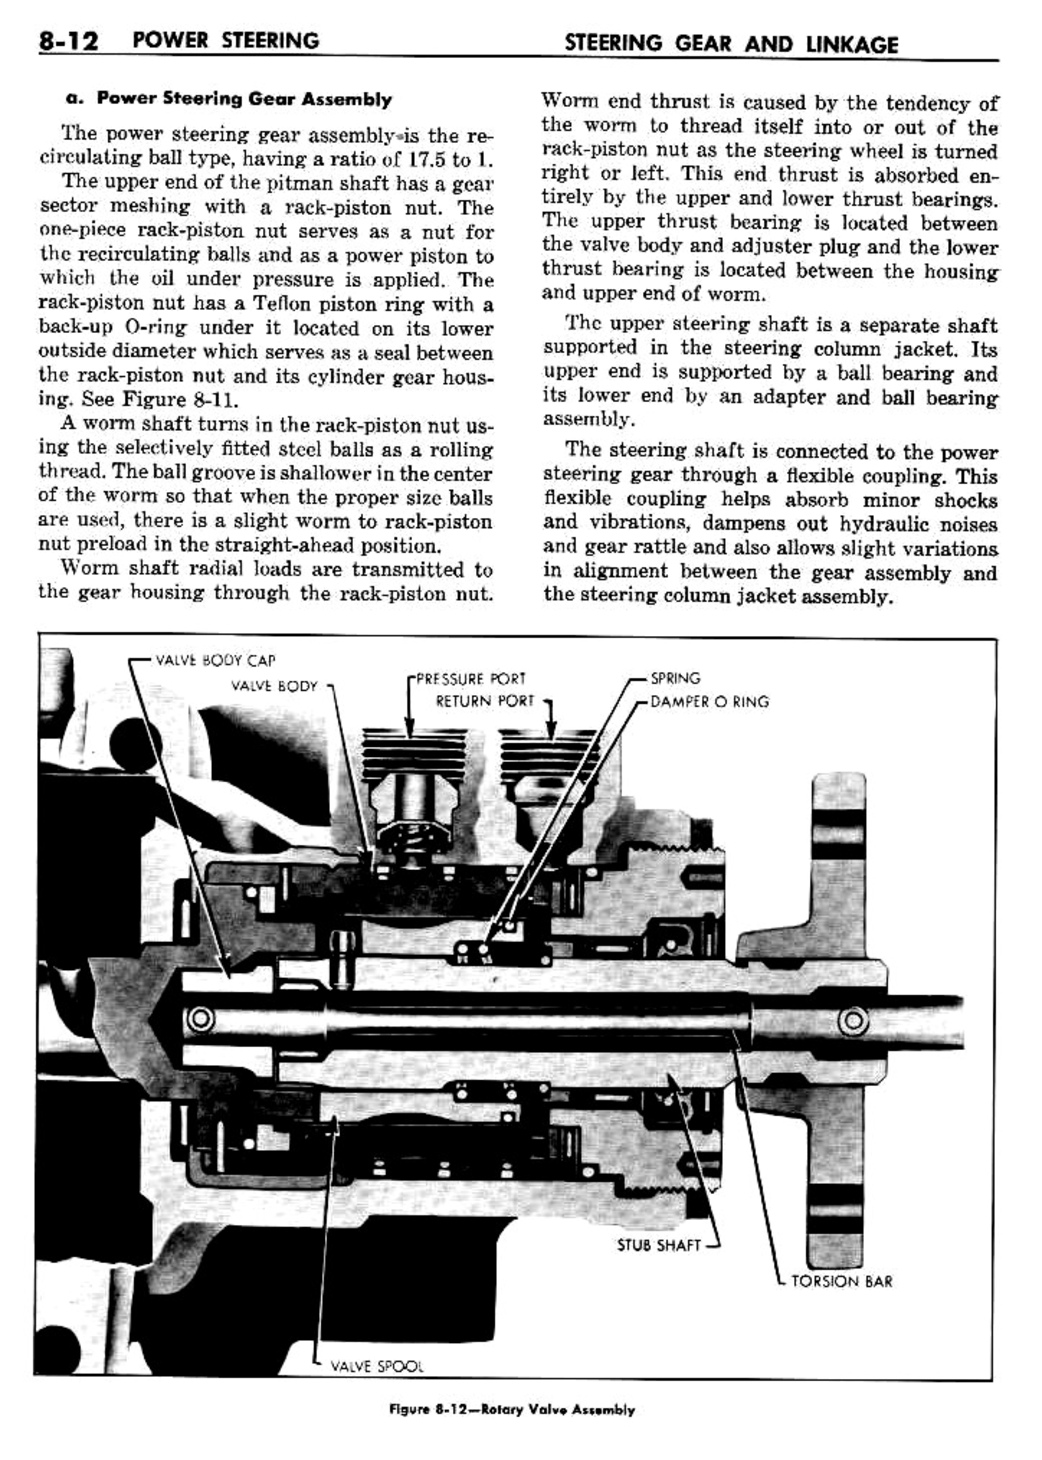 n_09 1960 Buick Shop Manual - Steering-012-012.jpg